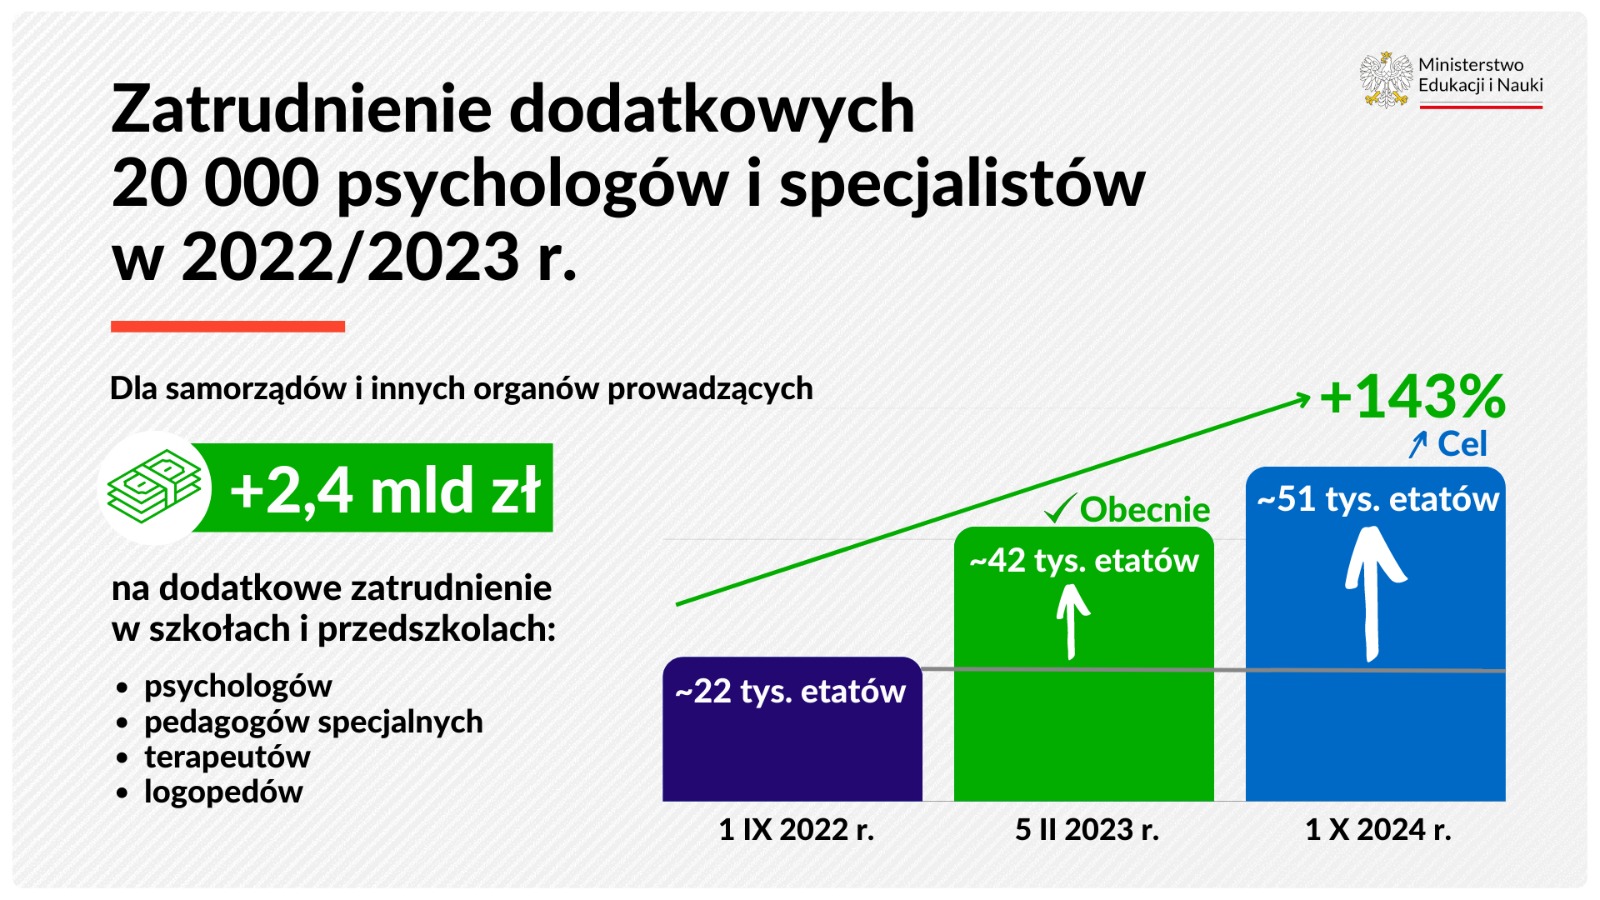 Zatrudnienie dodatkowych 20 000 psychologów i specjalistów w 2022/2023 r. Dla samorządów i innych organów prowadzących + 2,4 mld zł na dodatkowe zatrudnienie w szkołach i przedszkolach: psychologów, pedagogów specjalnych, terapeutów, logopedów.